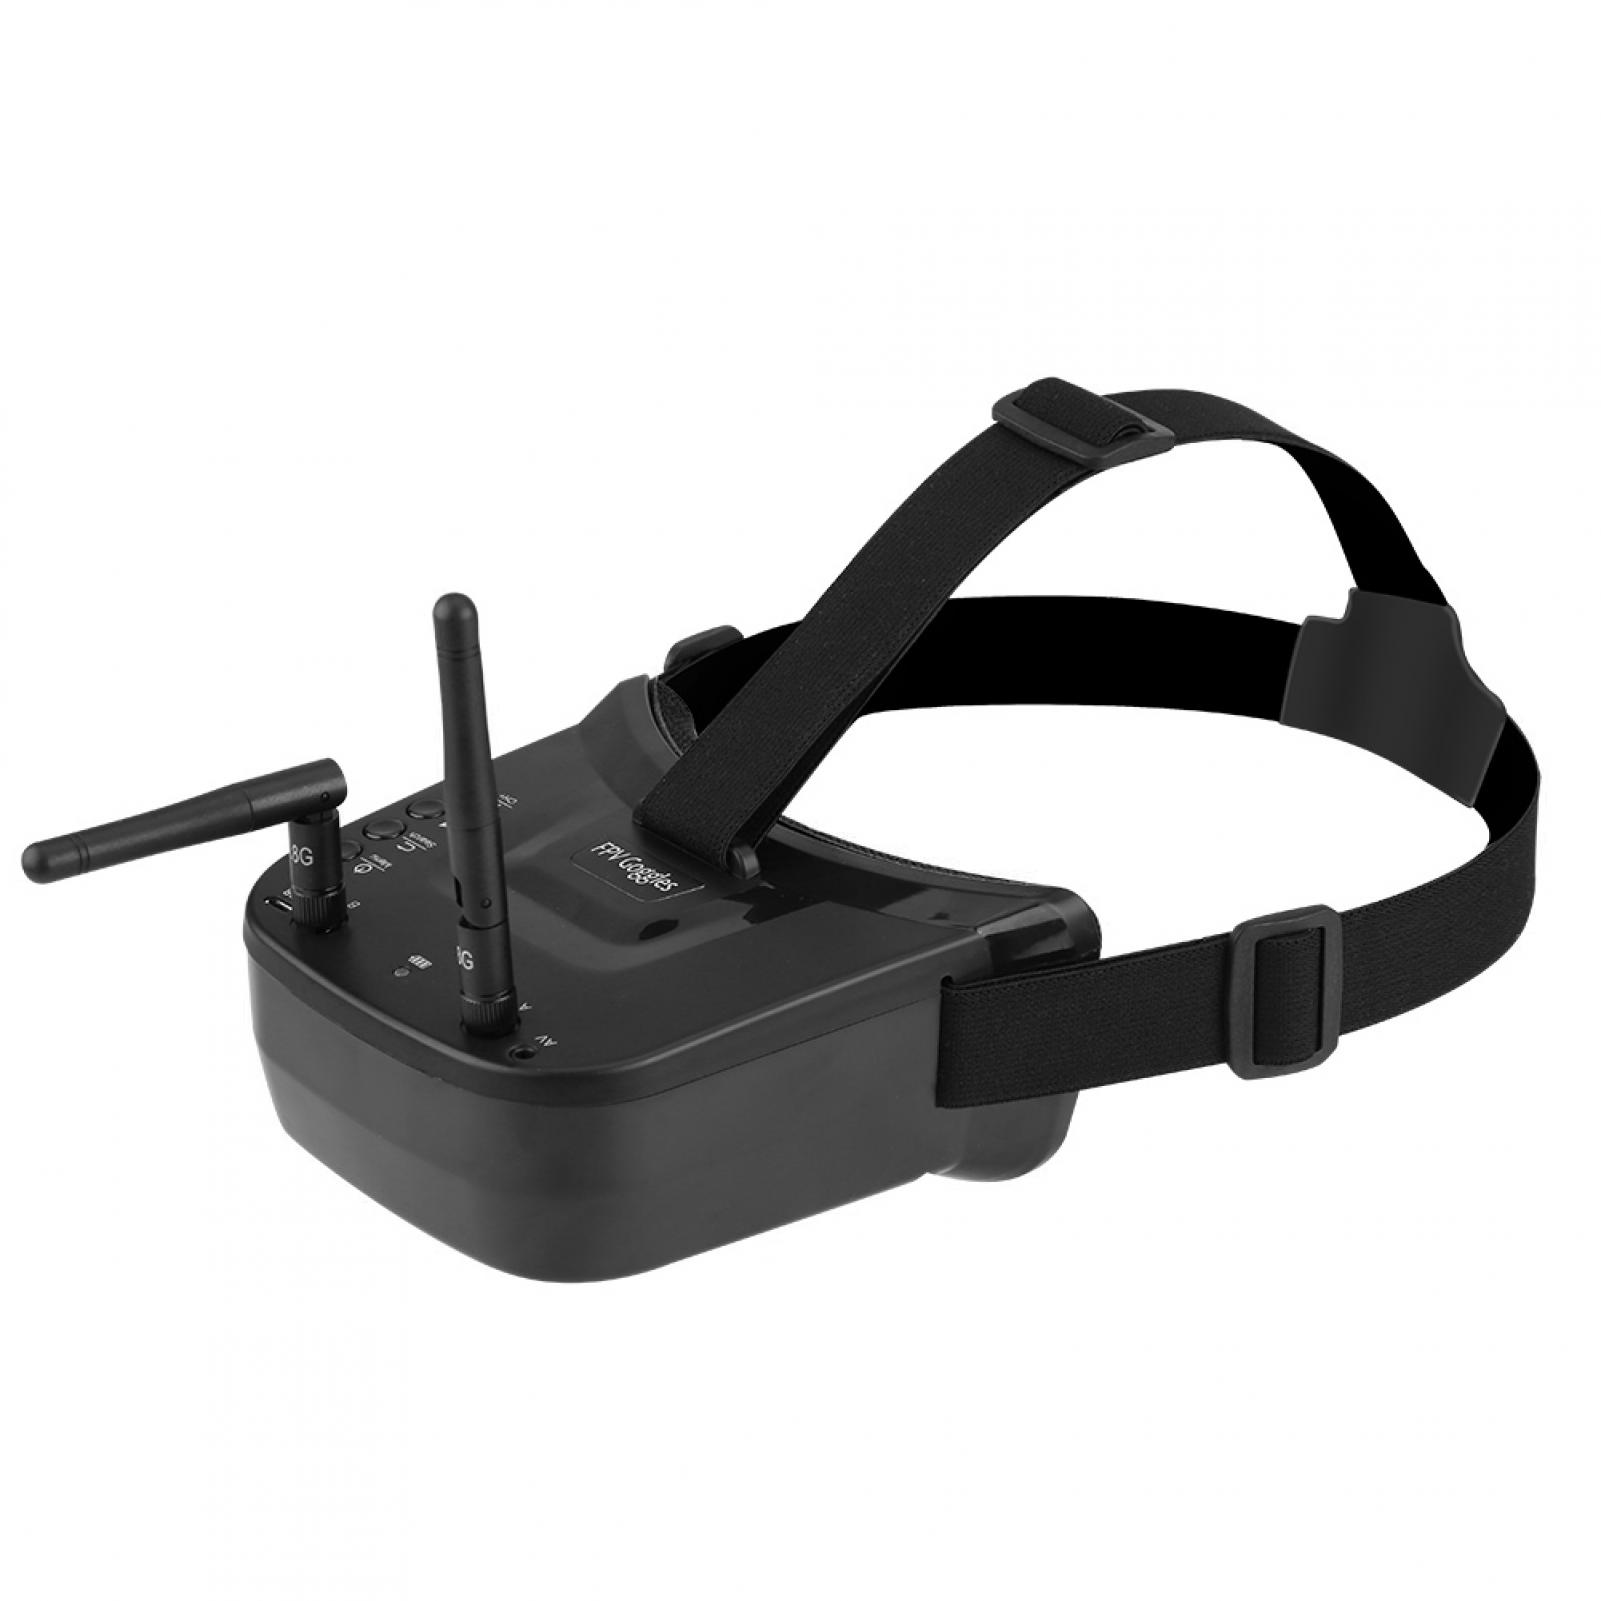 3" Mini FPV Goggles for RC Drones